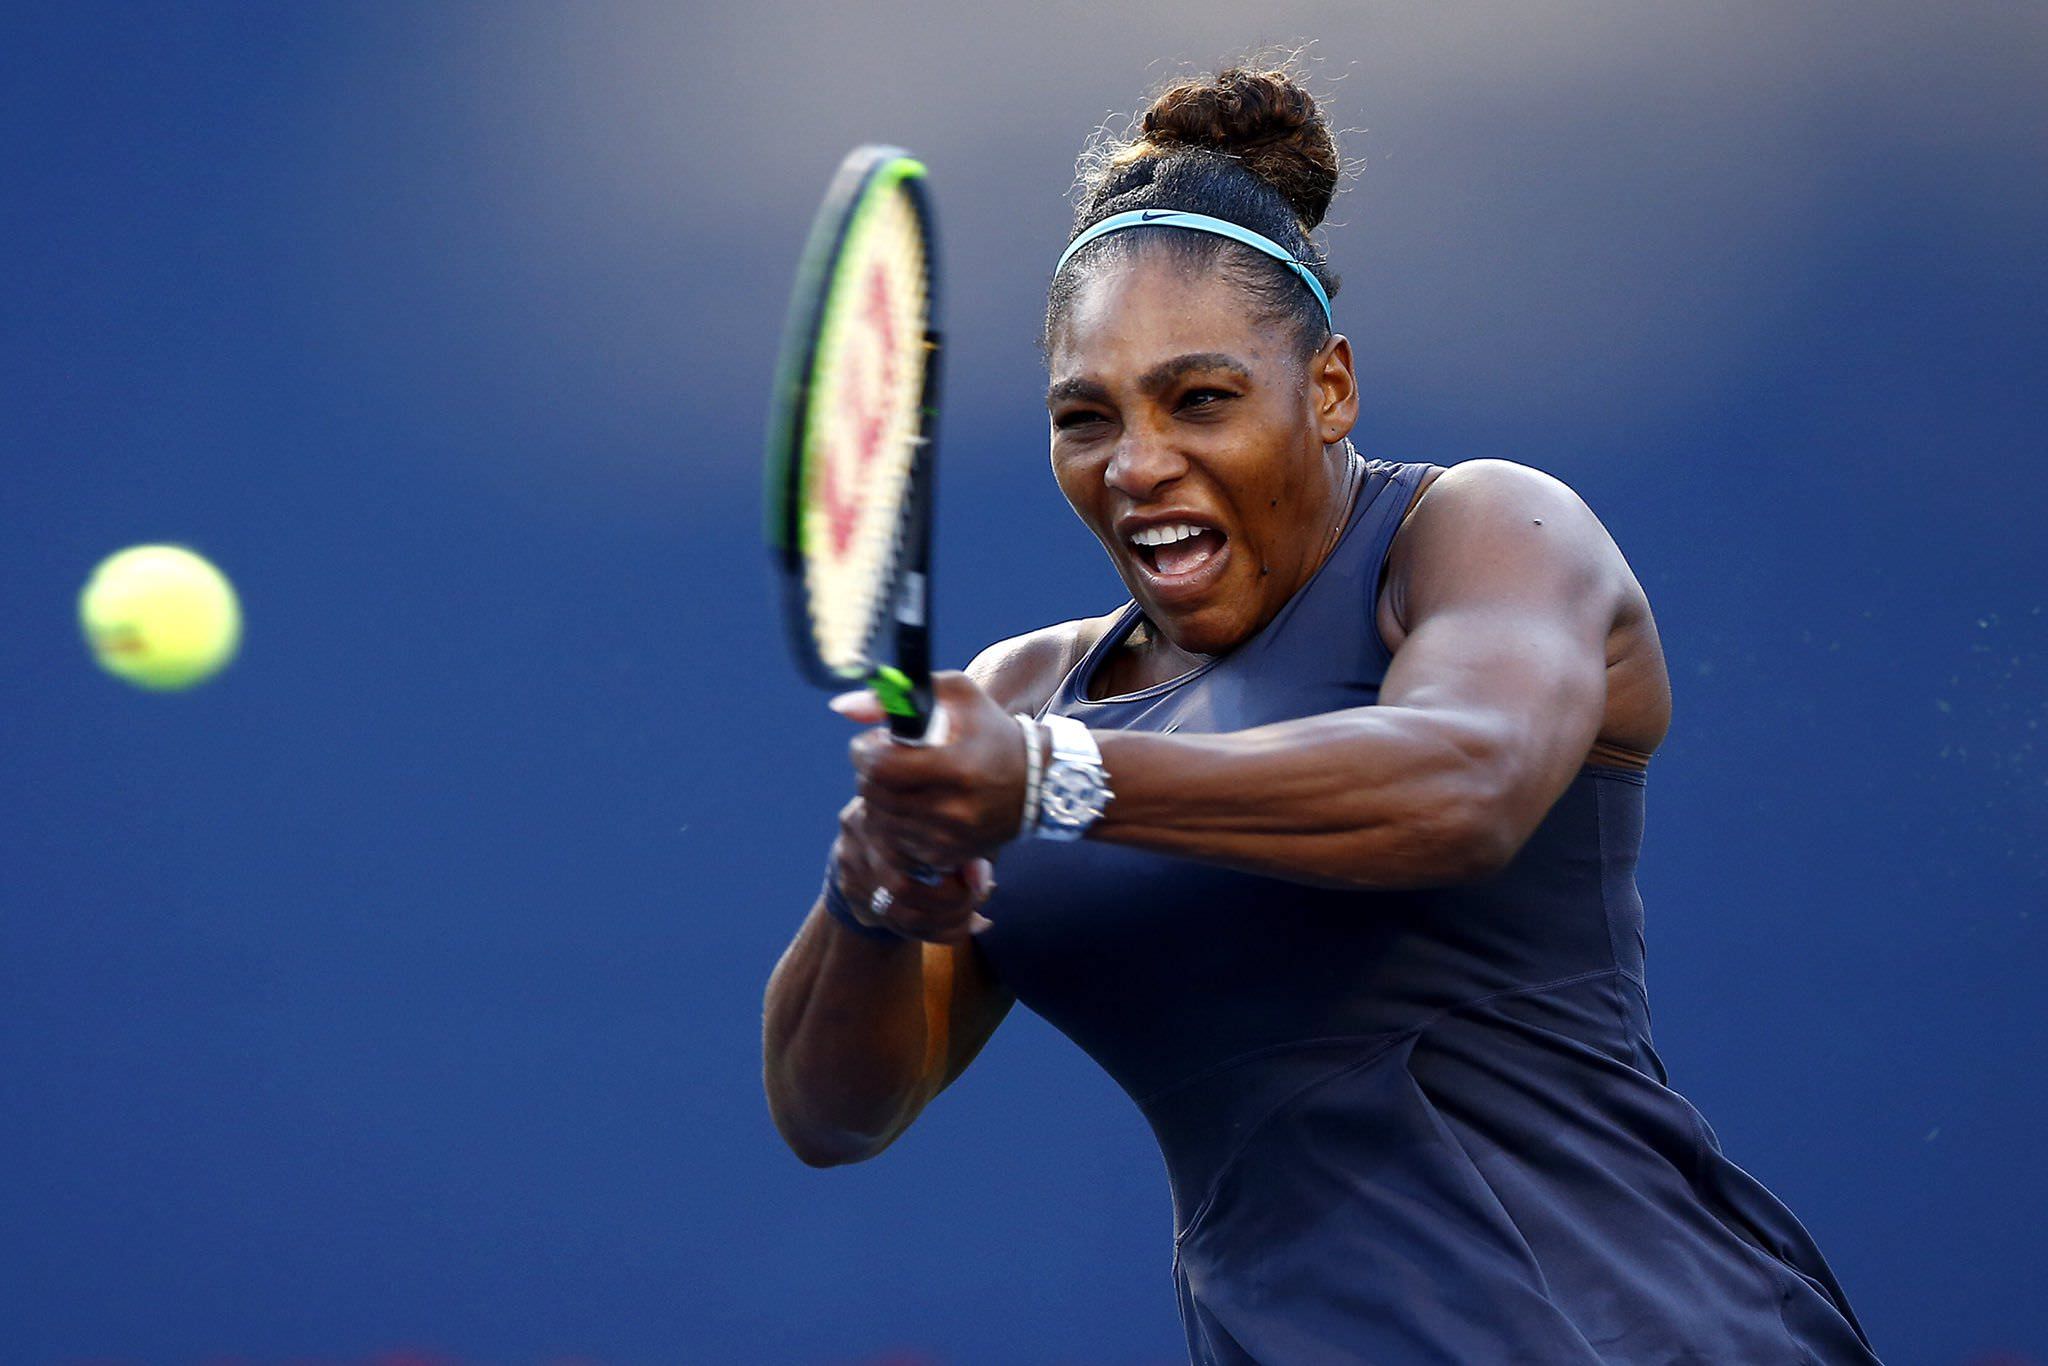 US Open, Serena Williams comemora vaga: ‘Estou viva’